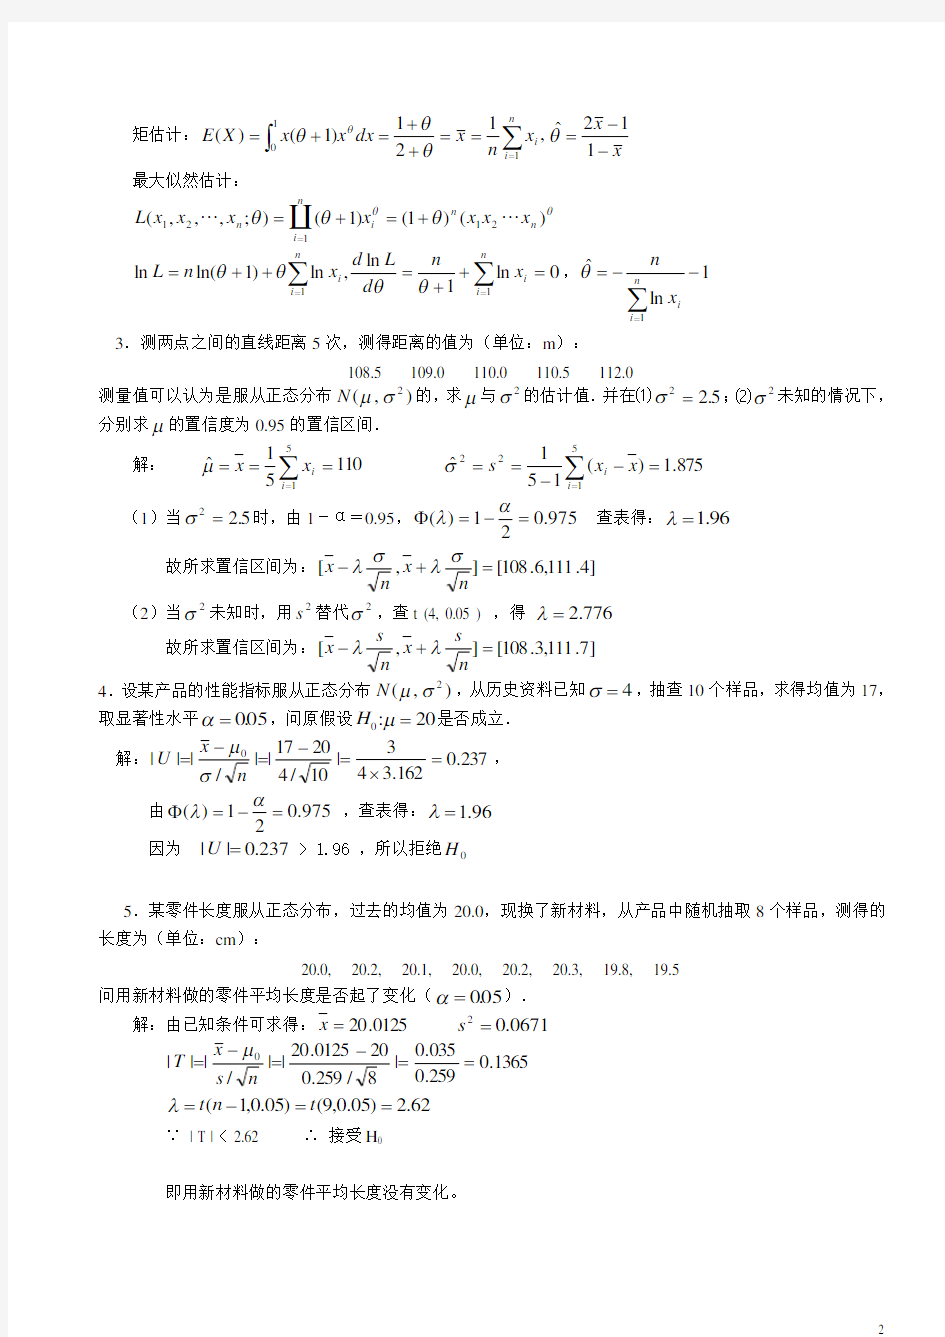 【工程数学】形成性考核册作业答案4